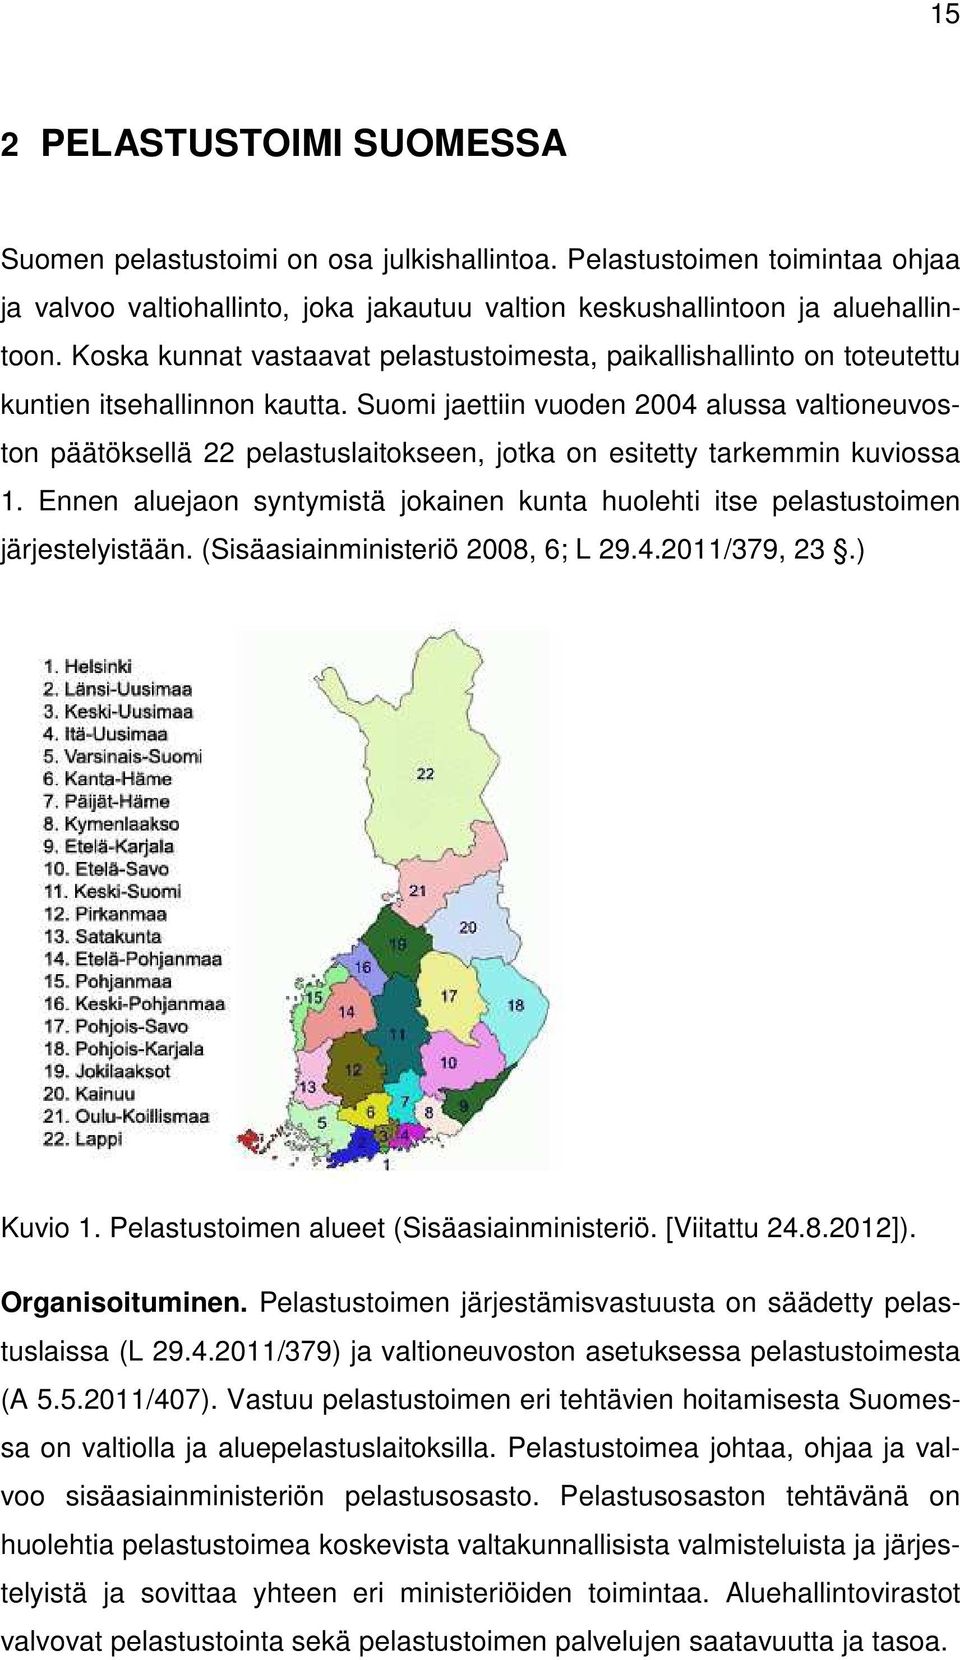 Suomi jaettiin vuoden 2004 alussa valtioneuvoston päätöksellä 22 pelastuslaitokseen, jotka on esitetty tarkemmin kuviossa 1.